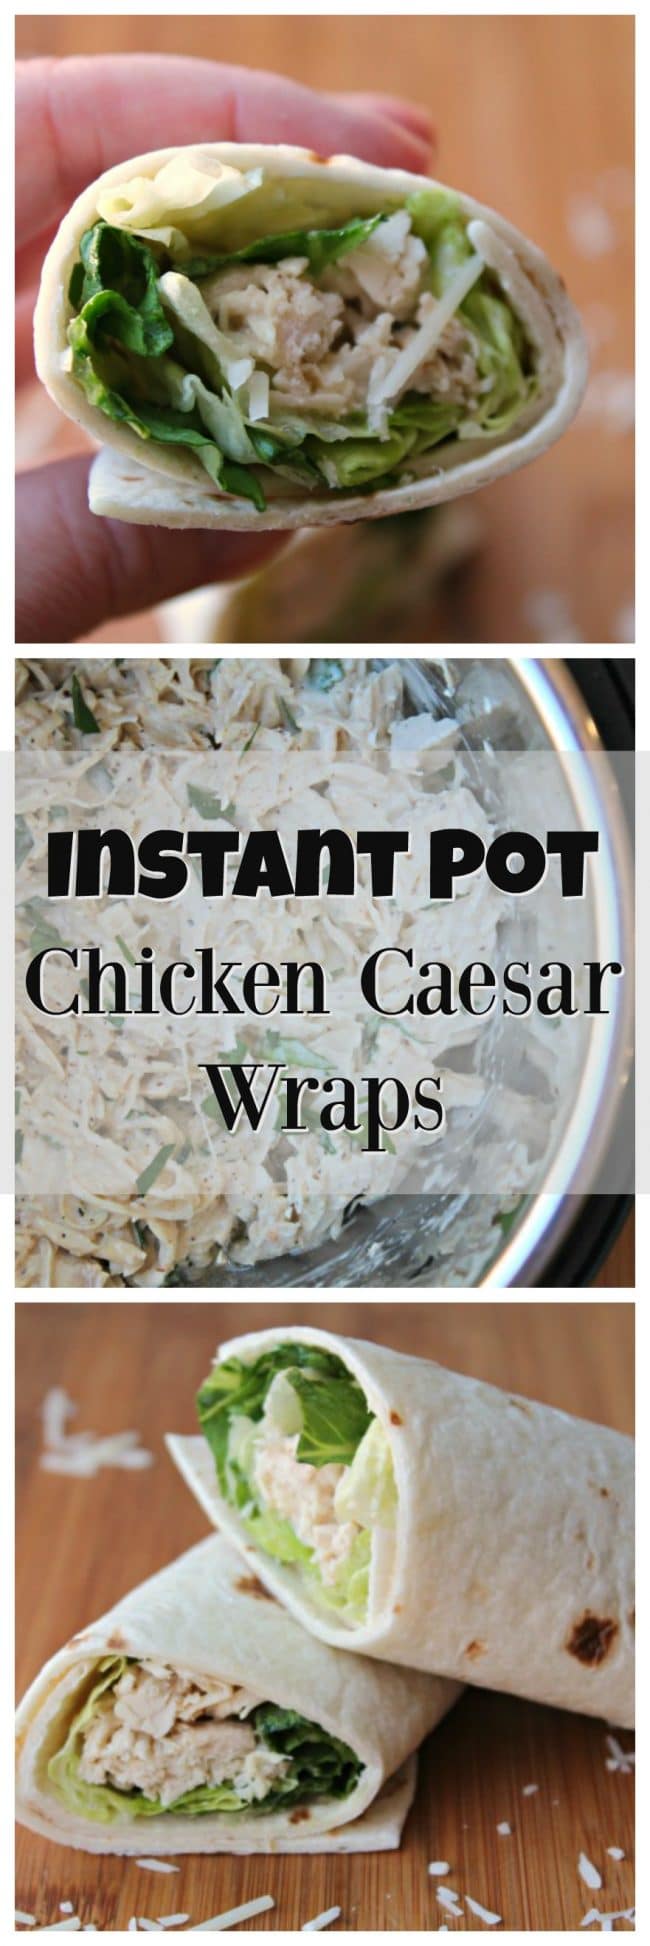 Instant Pot Chicken Caesar Wraps